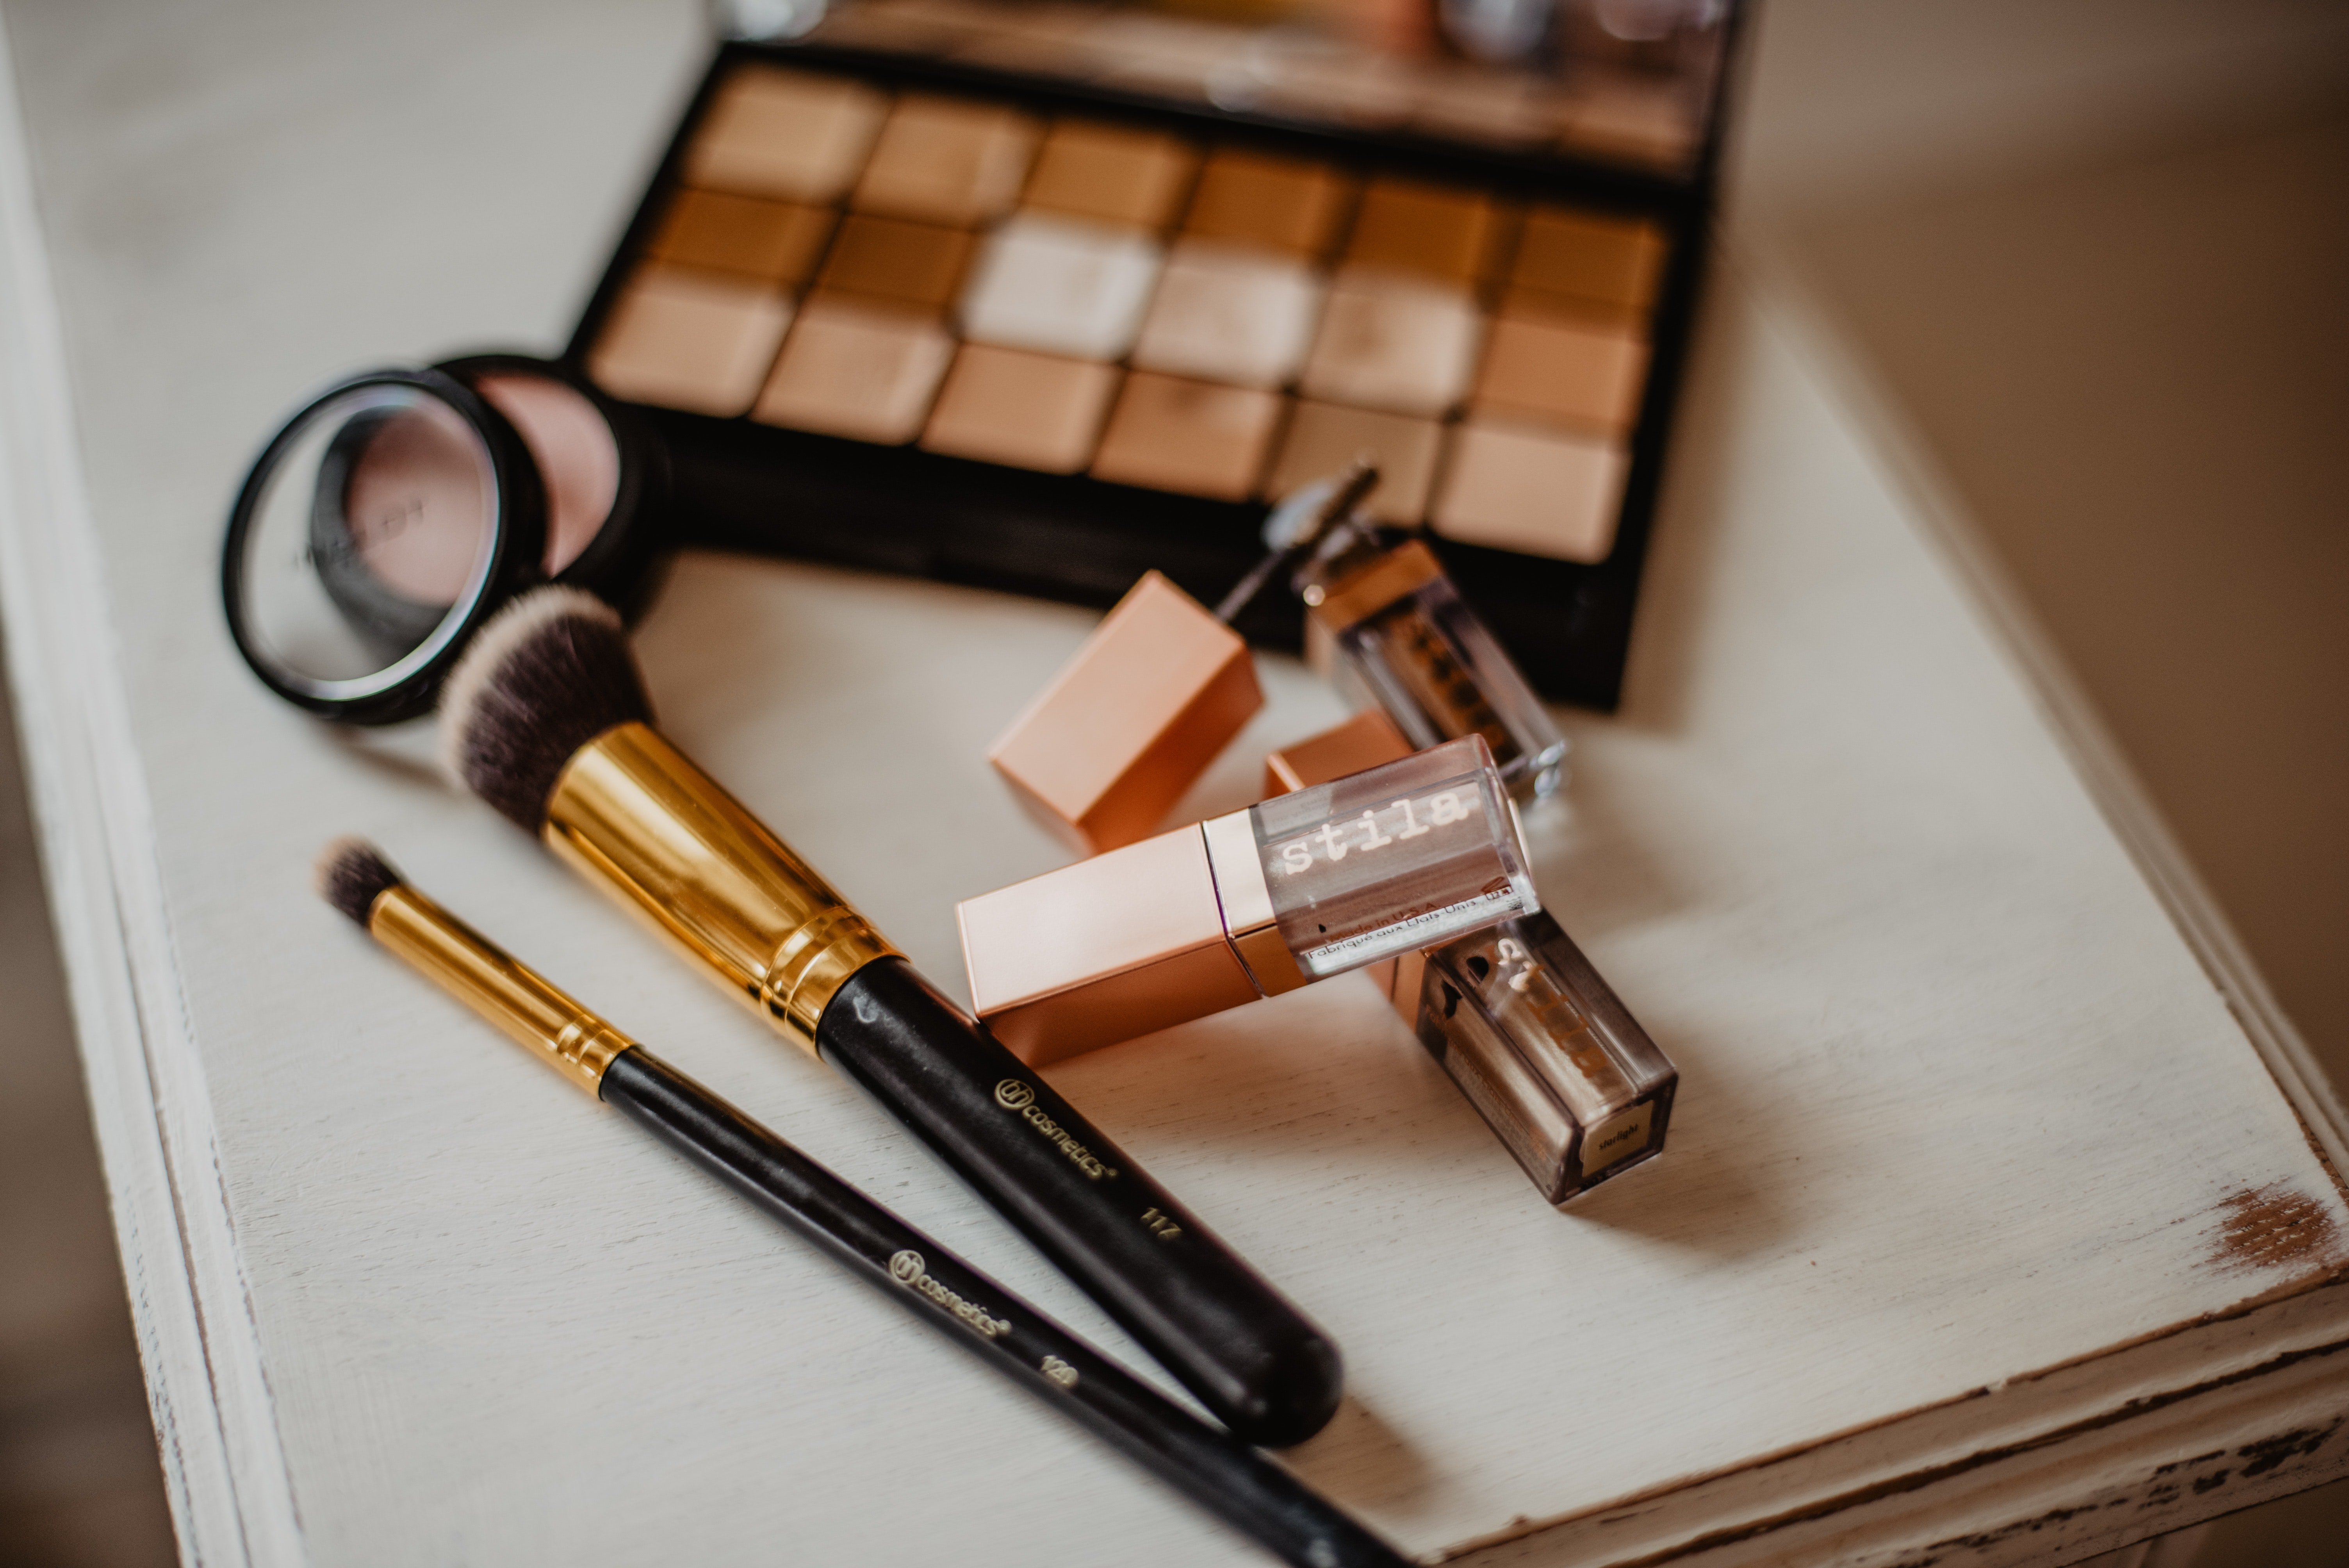 Productos de maquillaje. | Foto: Pexels